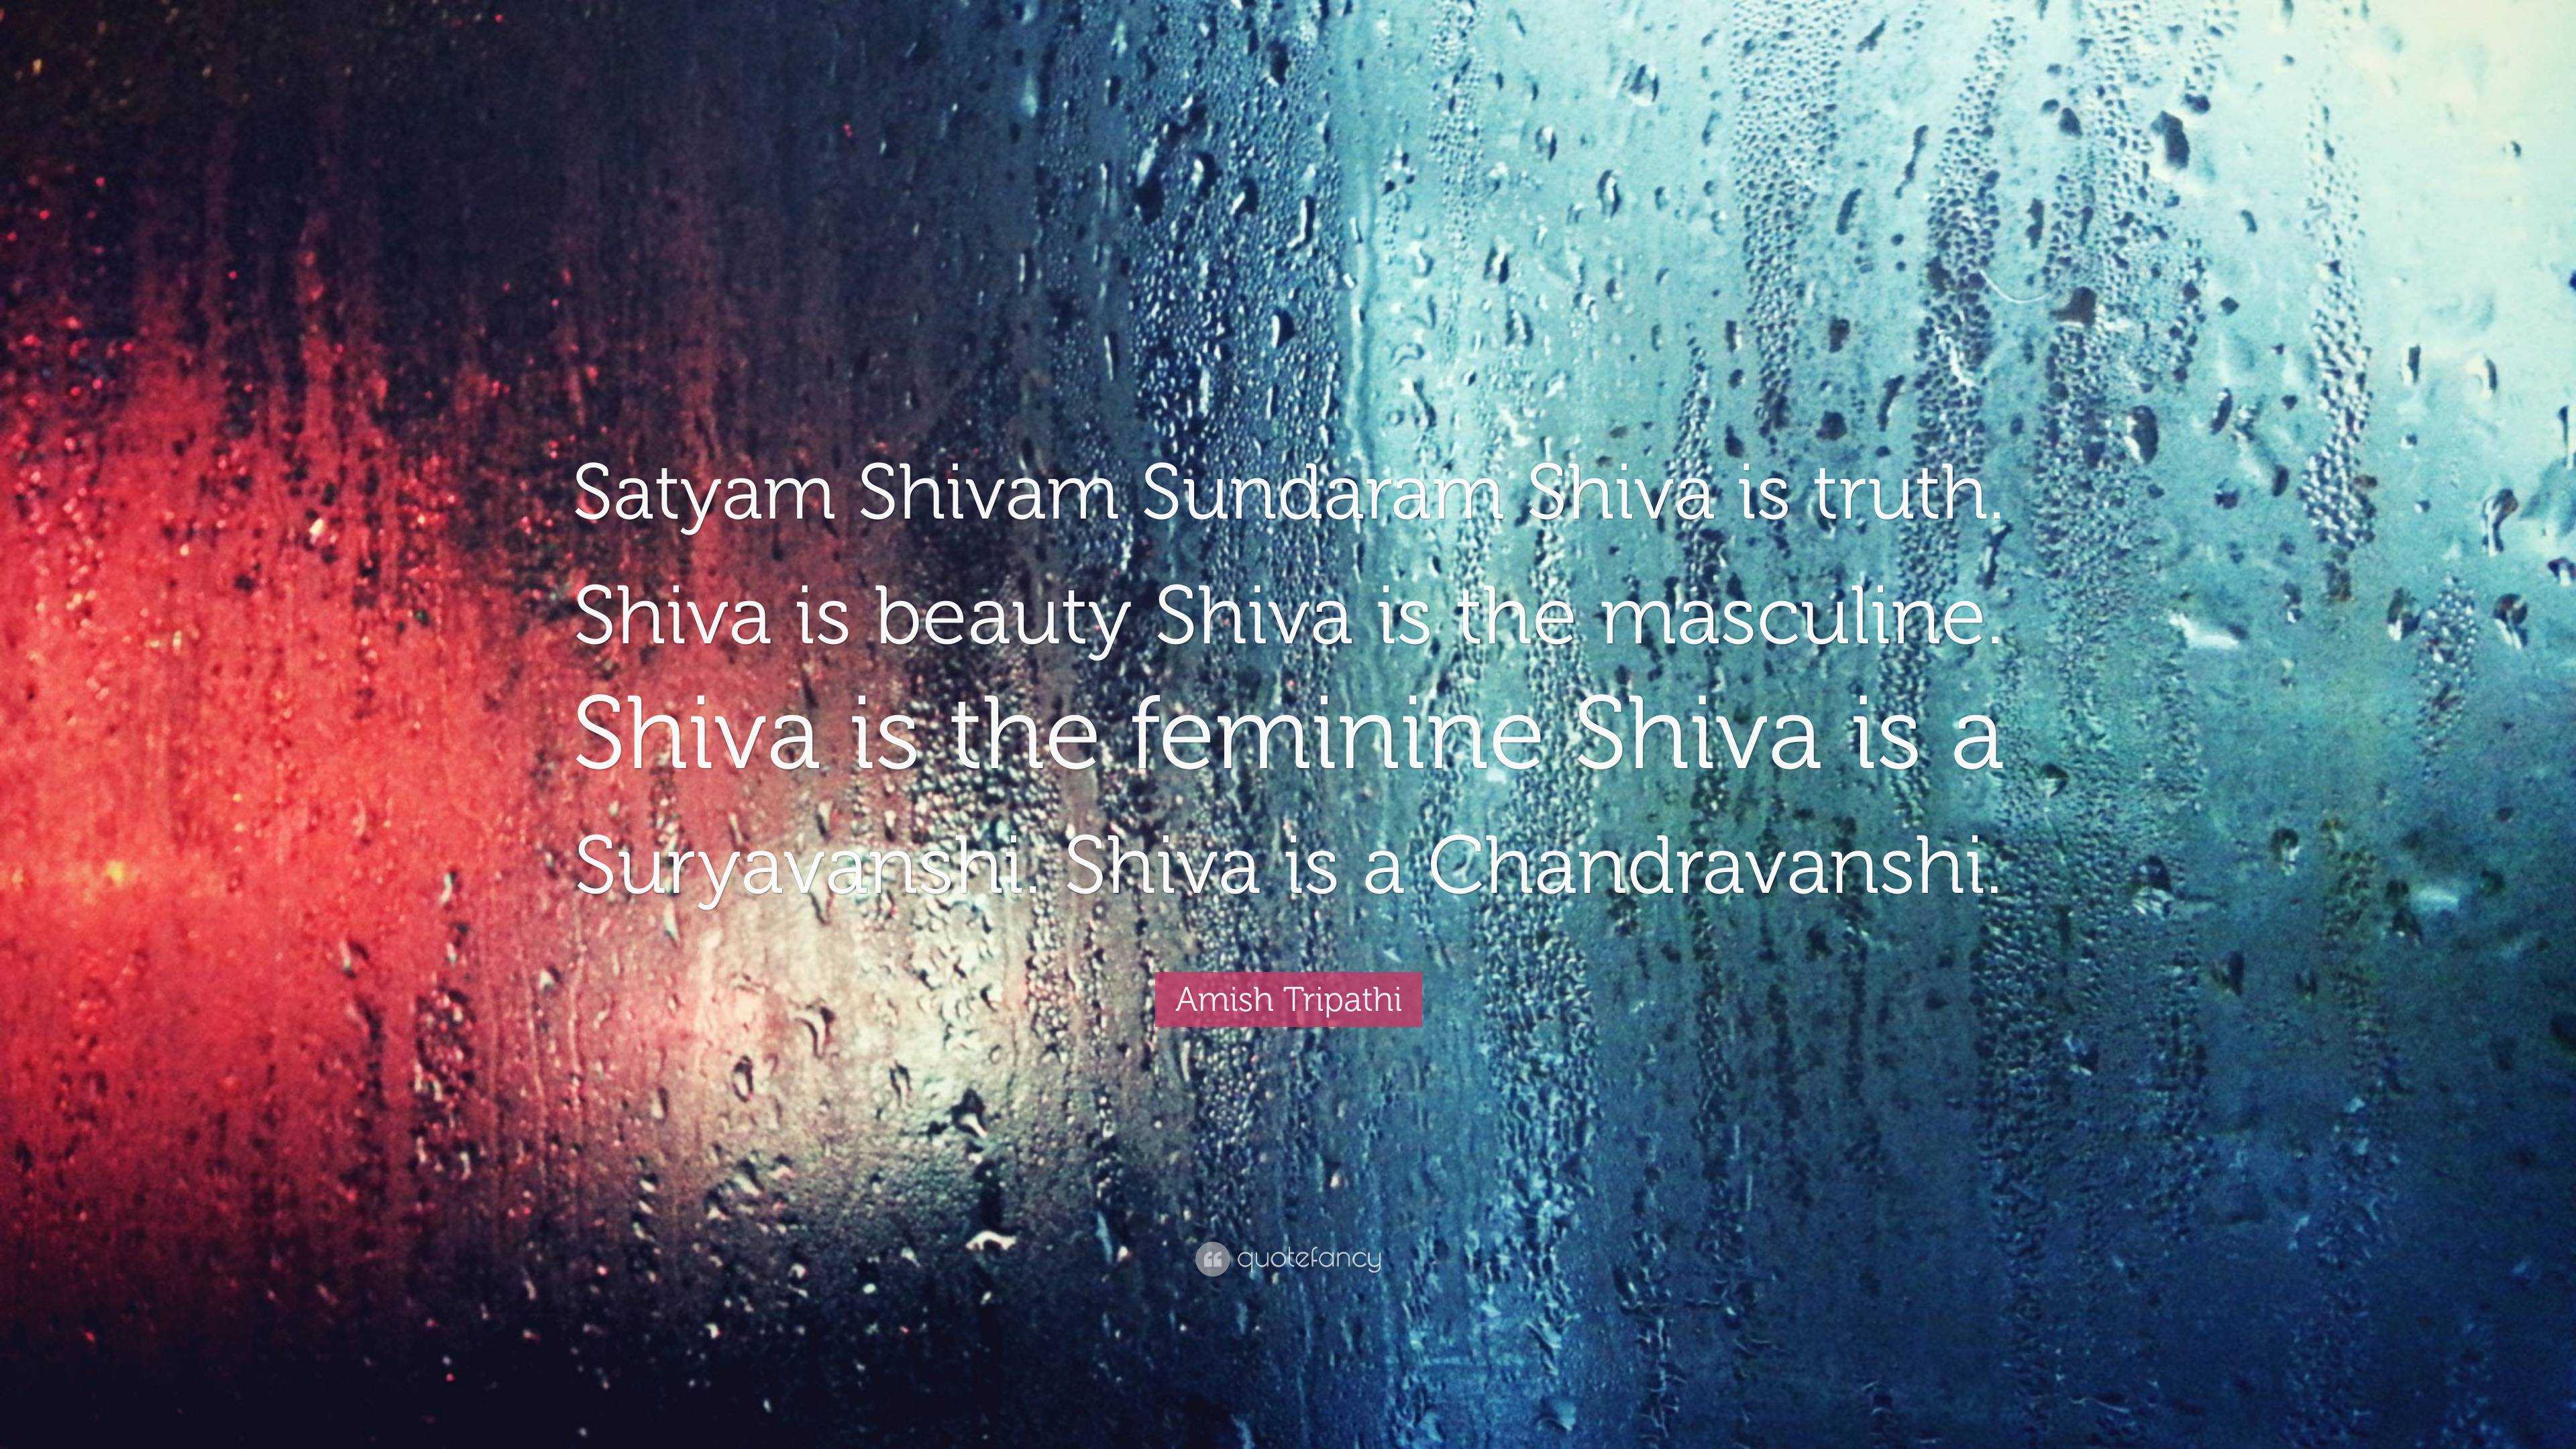 Satyam Shivam Sundaram Infracity